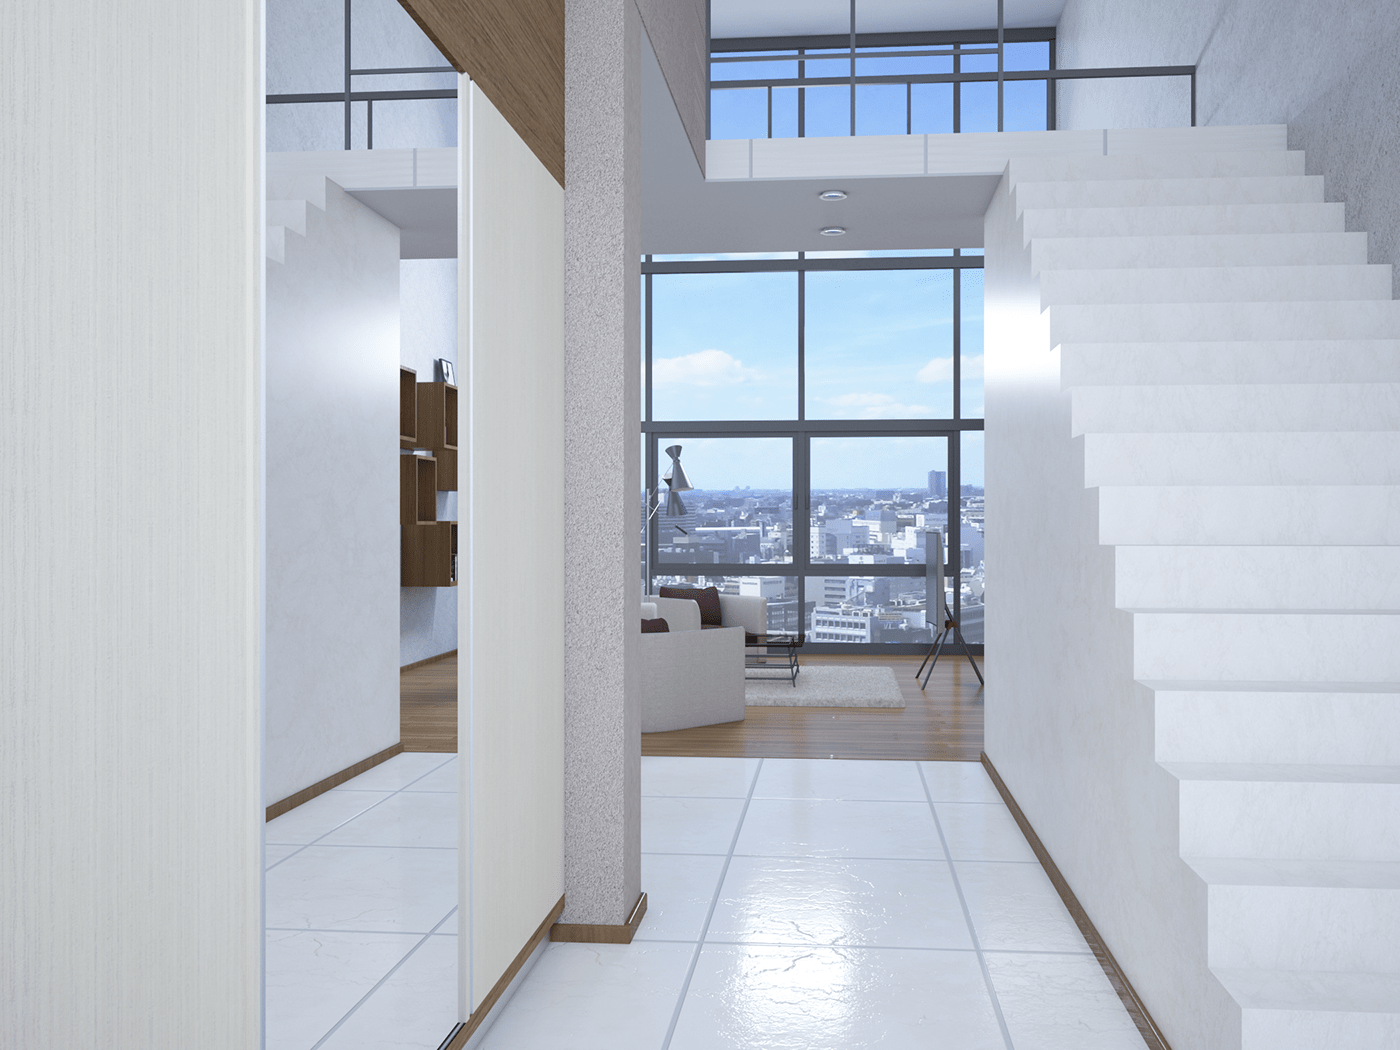 3DDesign 3drendering 3dsmax 3dvisualization interiordesign maisonette nightrender Residentalbuilding skyscraperarchitecture vray